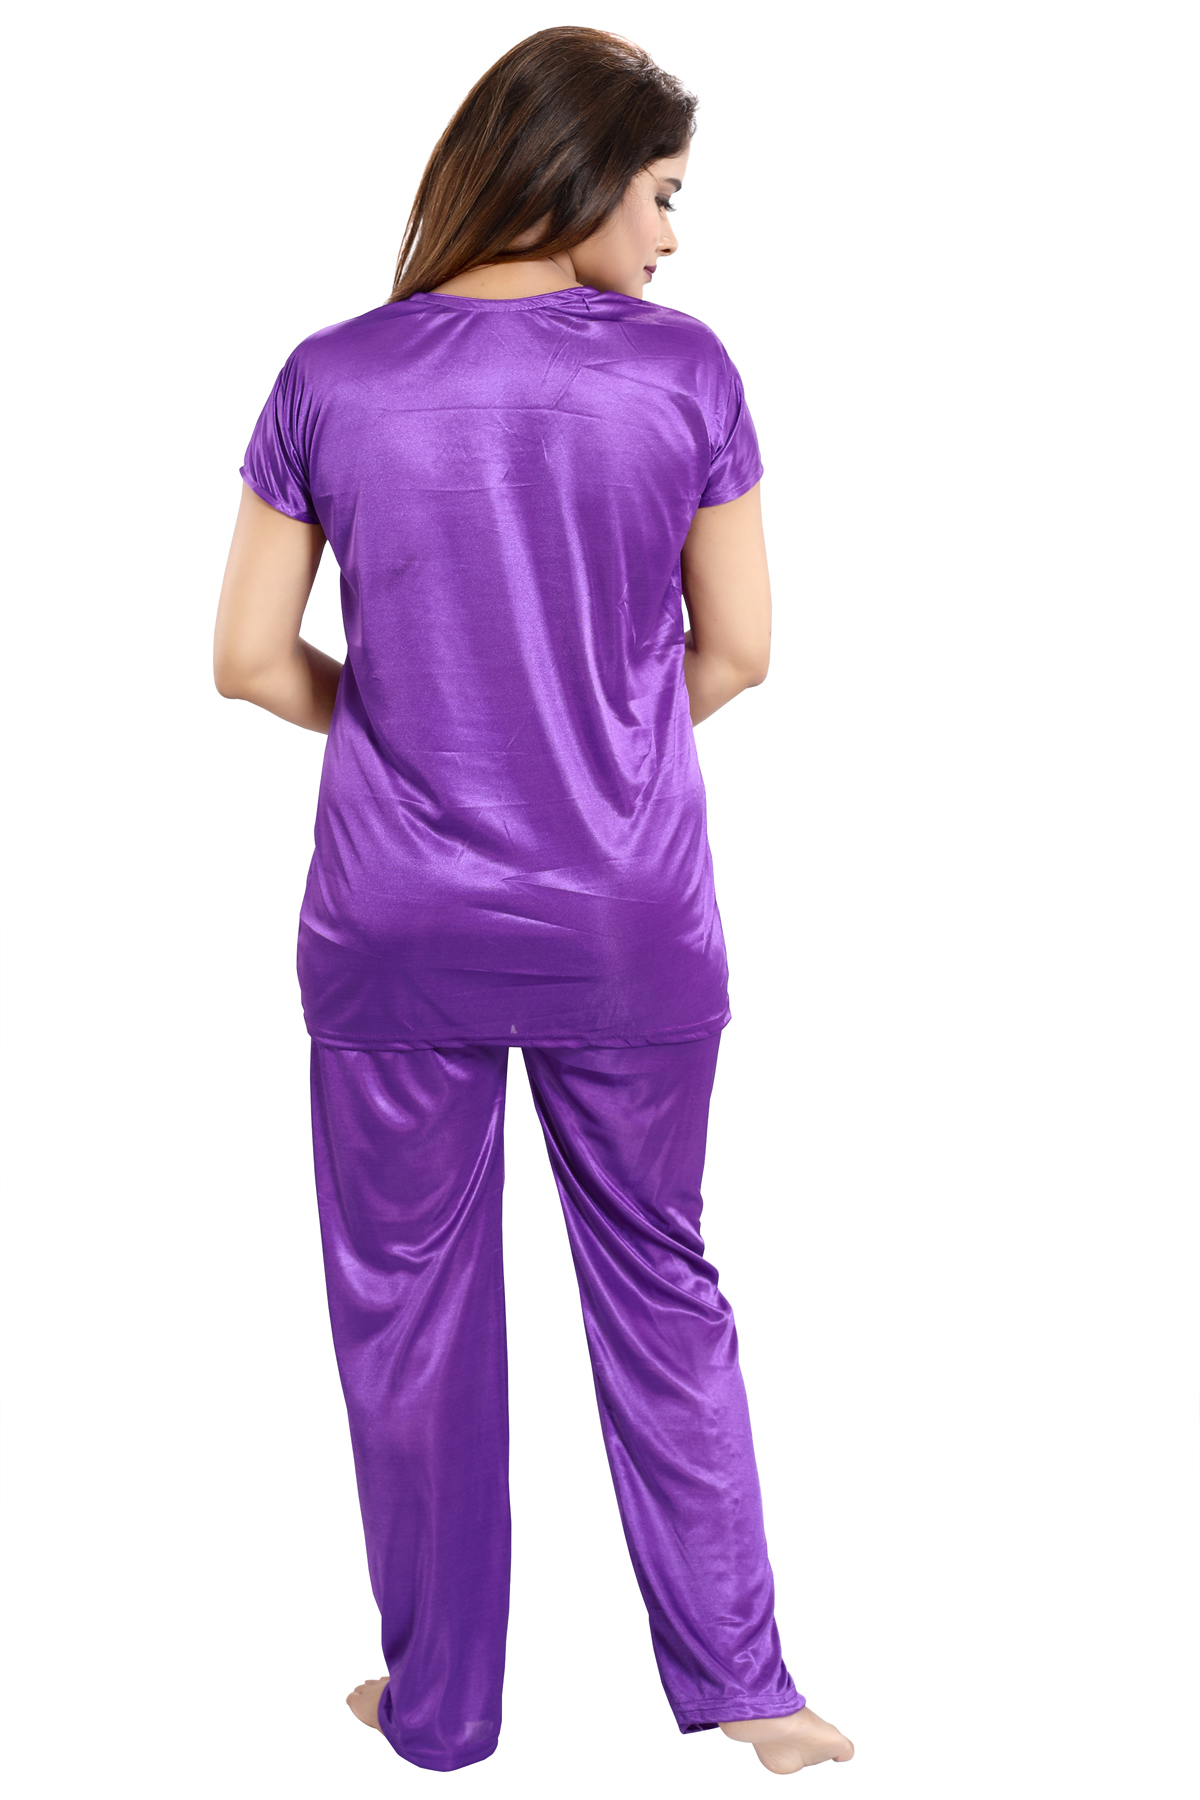 Buy Be You Purple Solid Lace Satin Women Nightwear Set (1 Robe, 1 ...